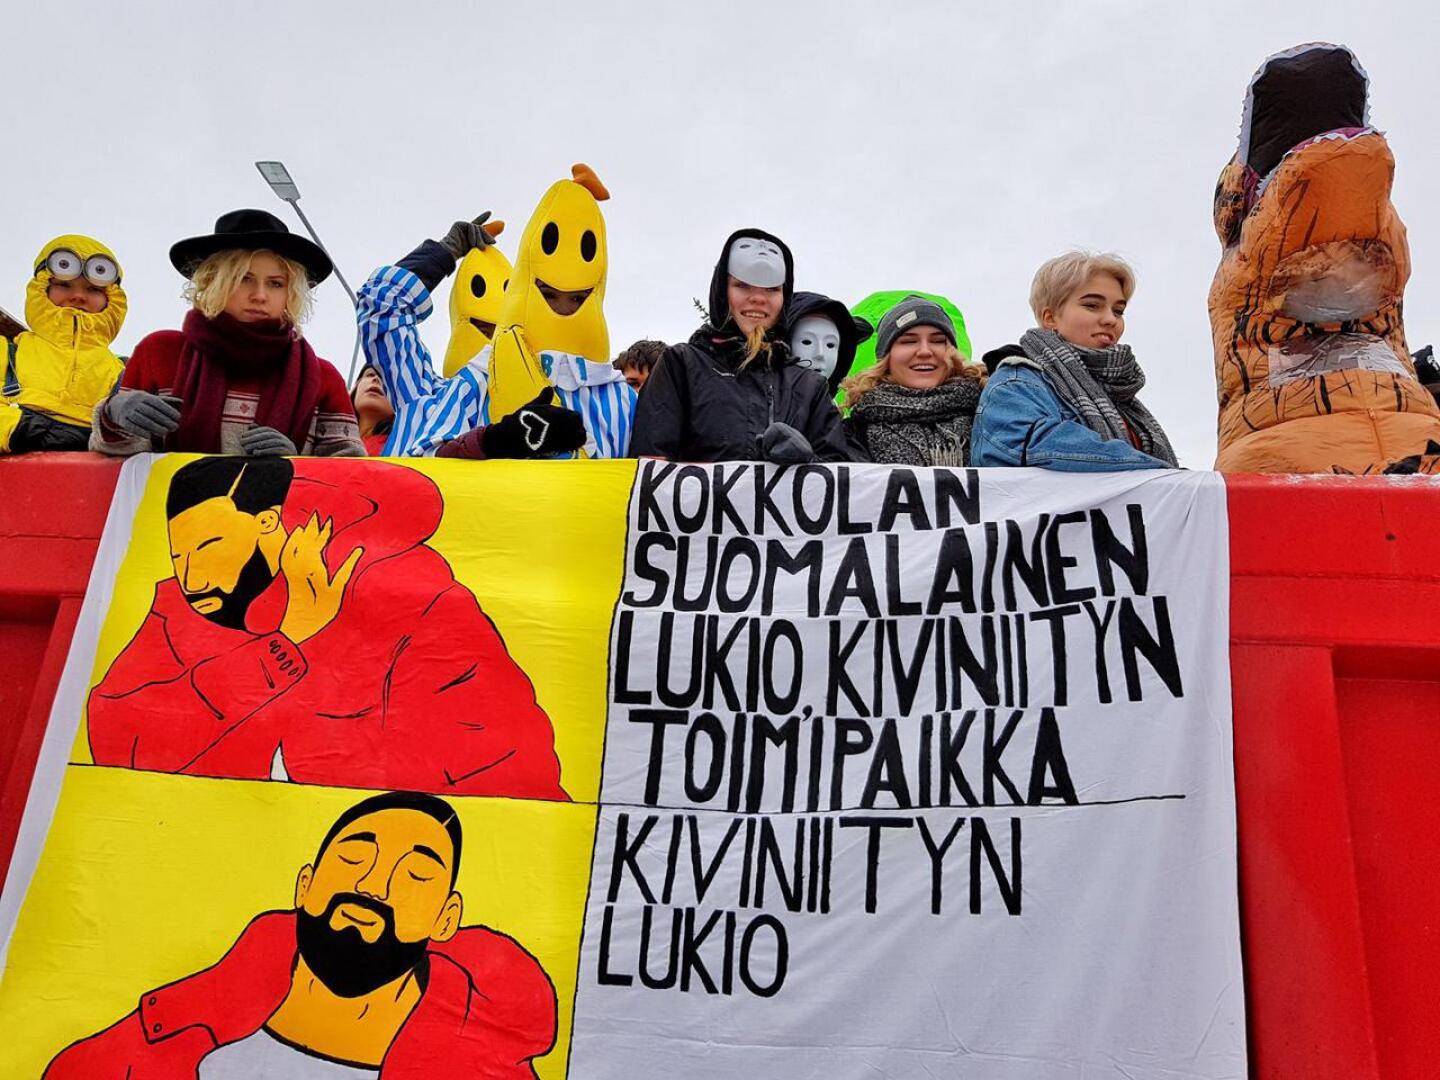 Internet-meemistä maalaukseksi. Kokkolan suomalaisen lukion Kiviniityn toimipaikan banderollissa otettiin kantaa Kokkolan lukiotilanteeseen itse maalatulla Drake-meemillä.